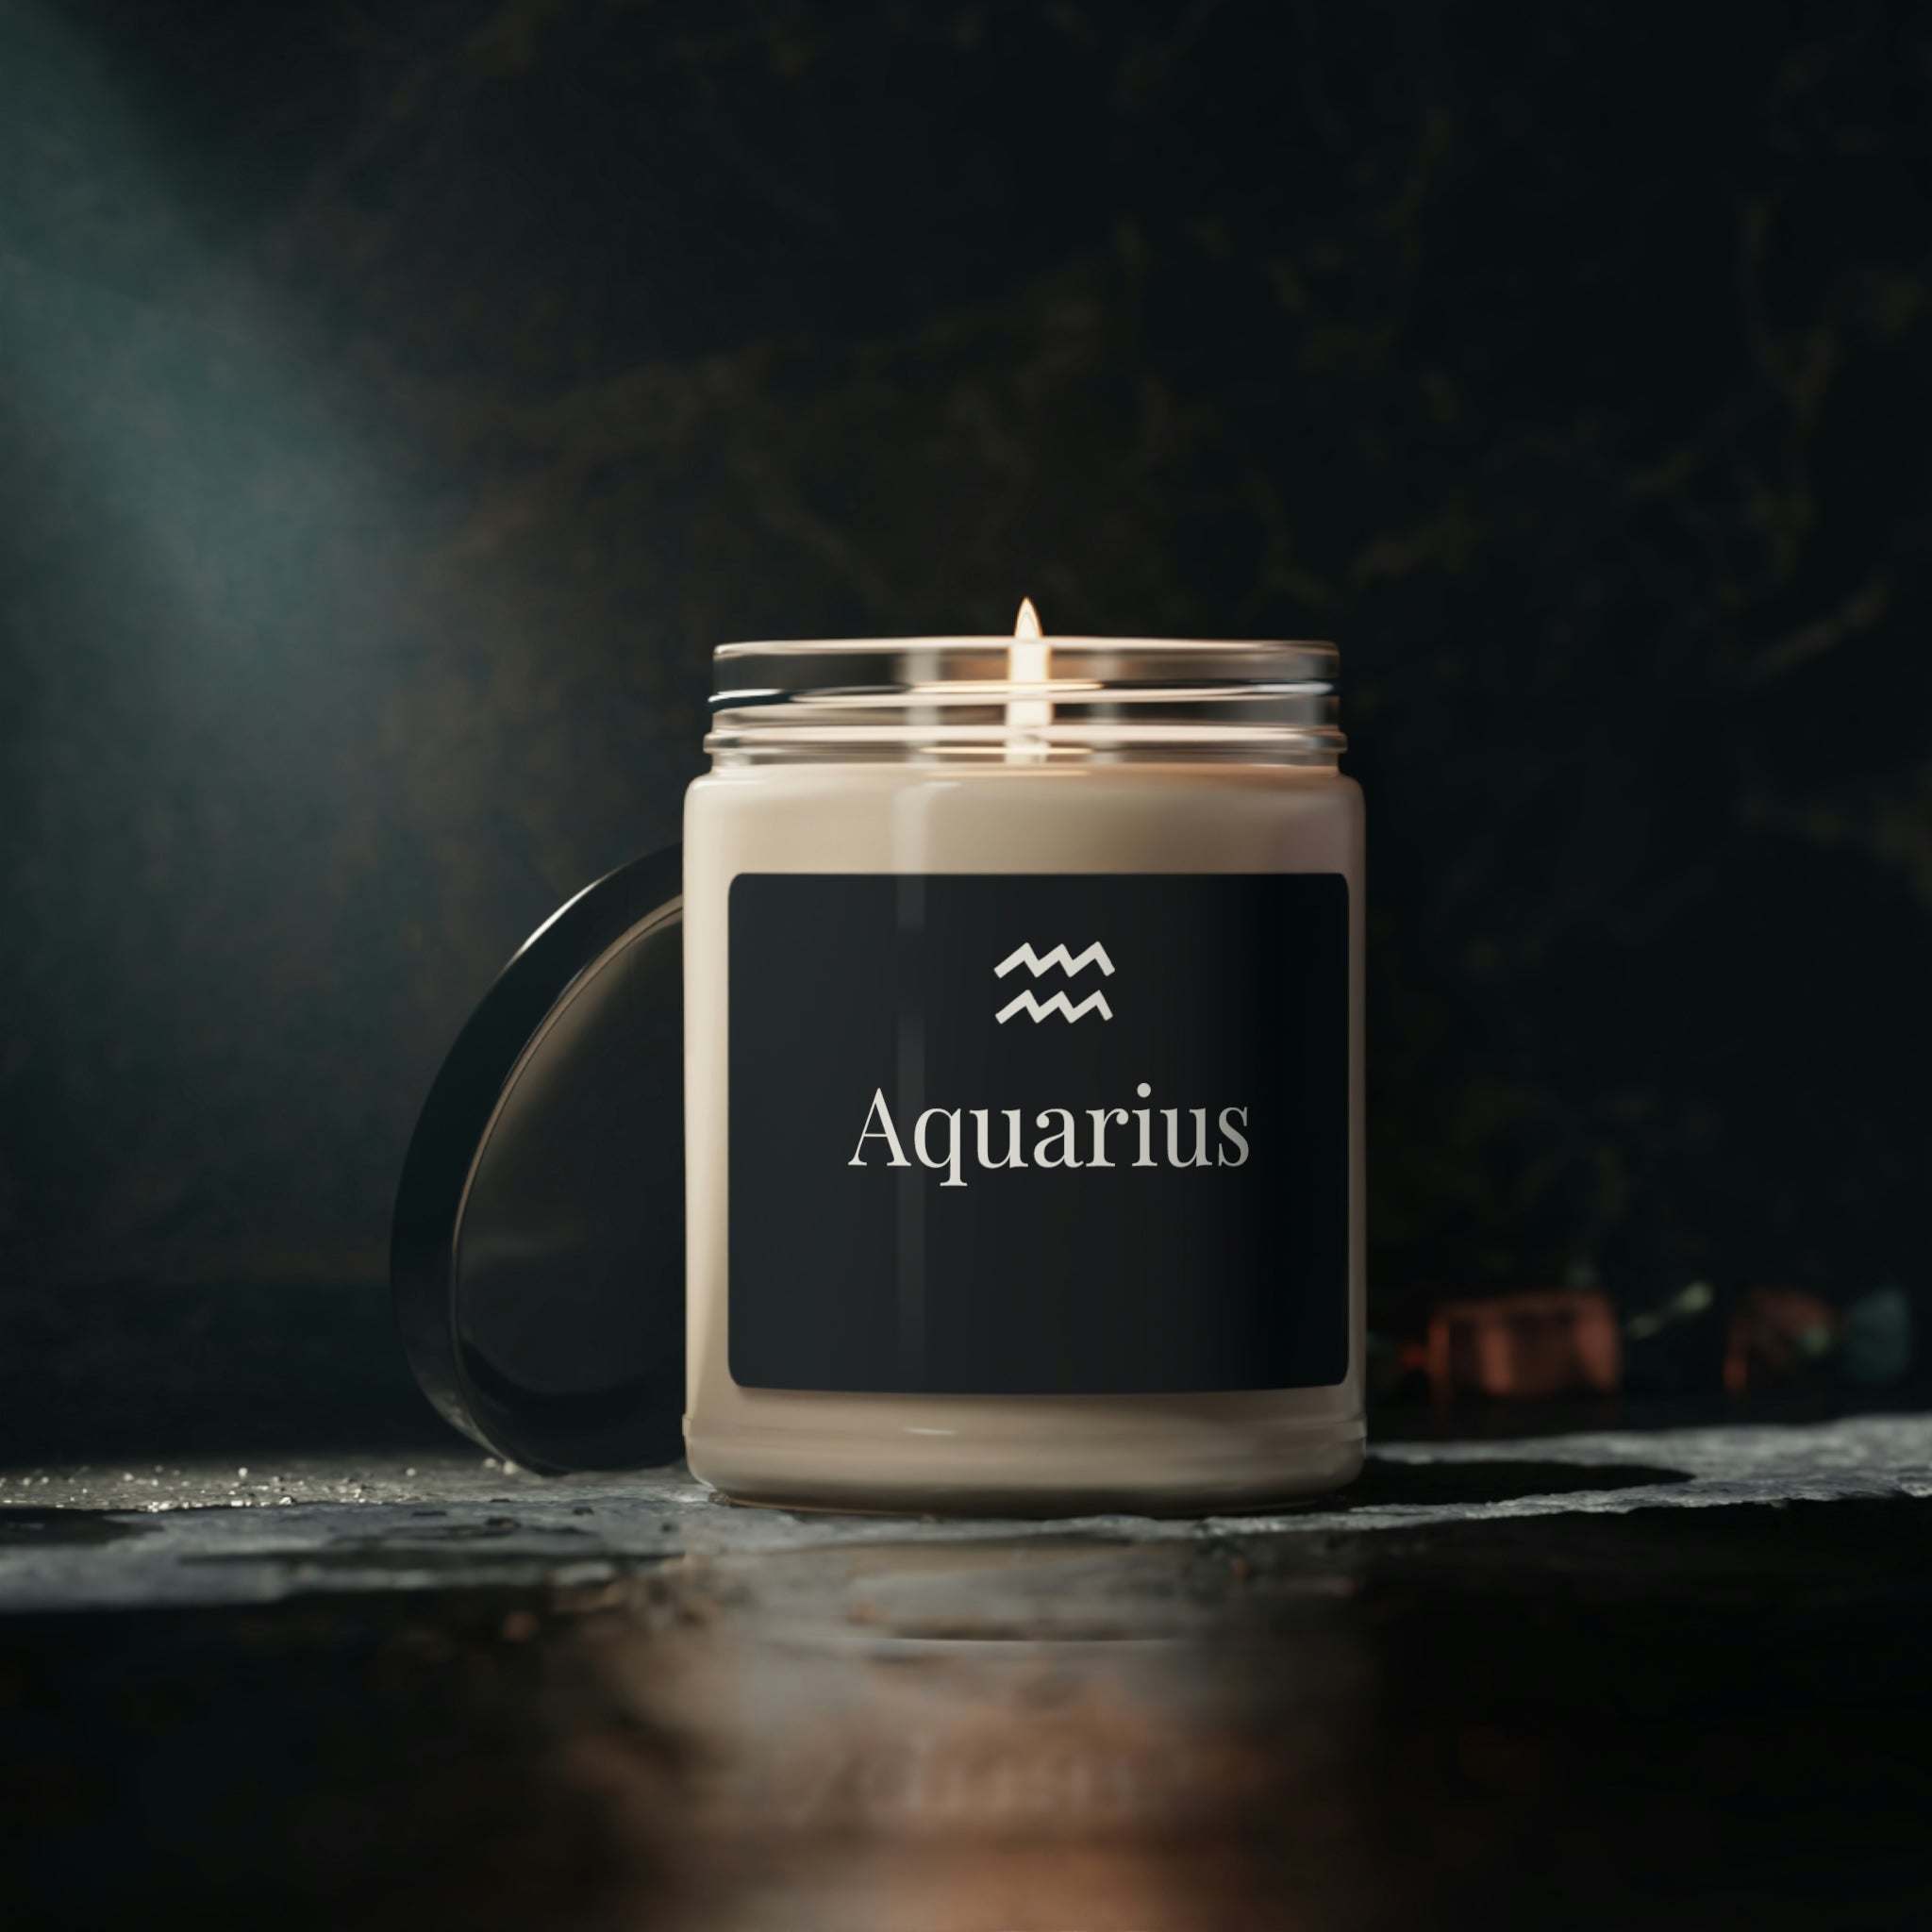 Aquarius Scented Candle